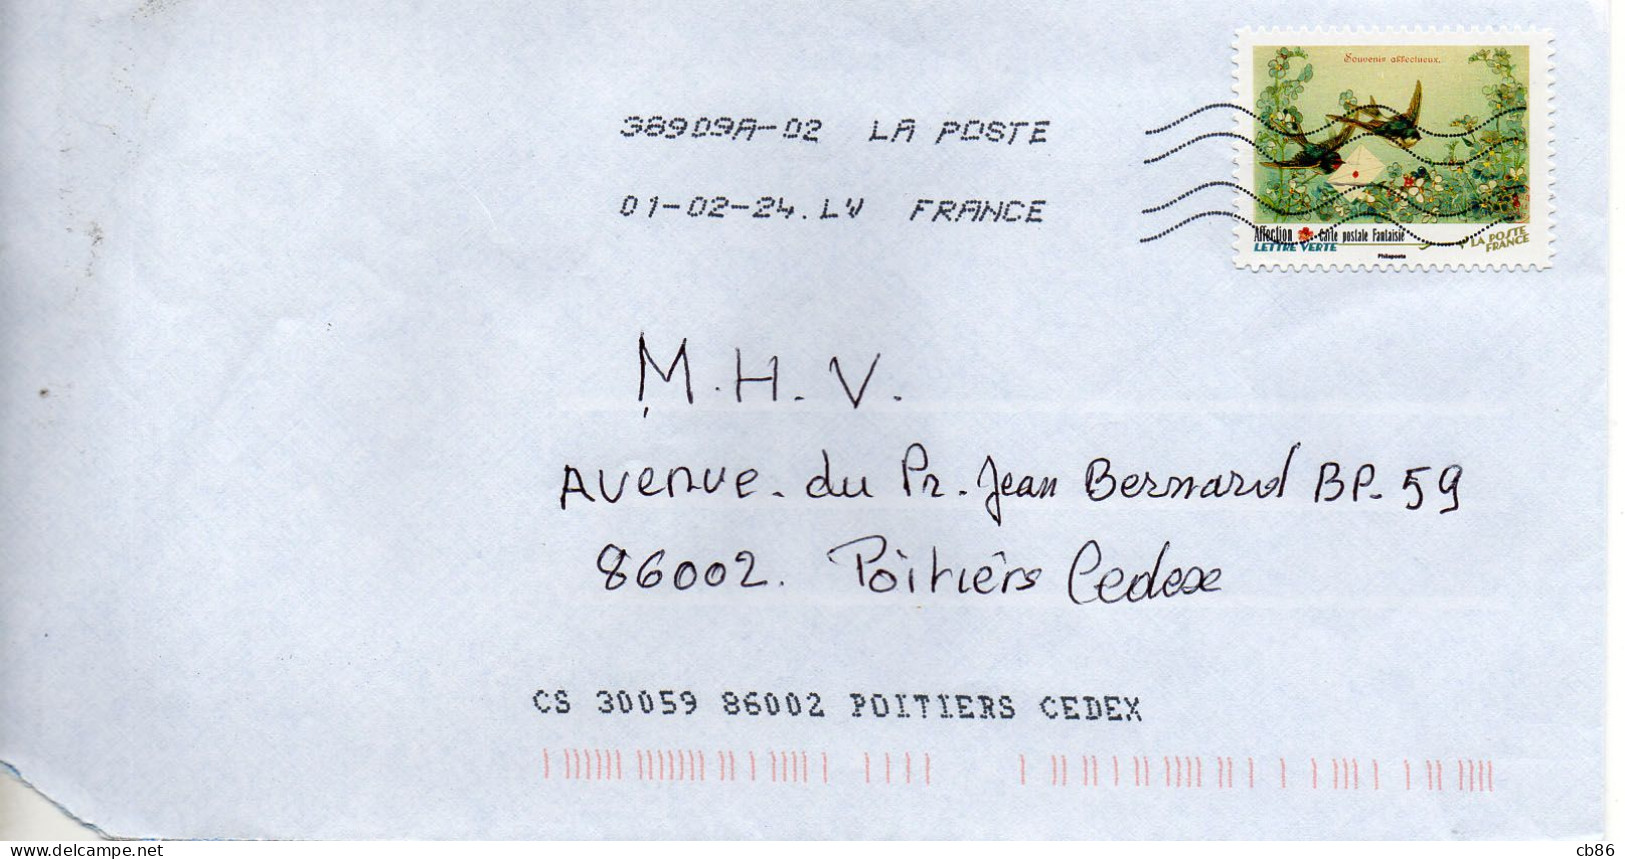 Timbre Adhésif N° 2157 Carte Postale Fantaisie Affection - 1961-....